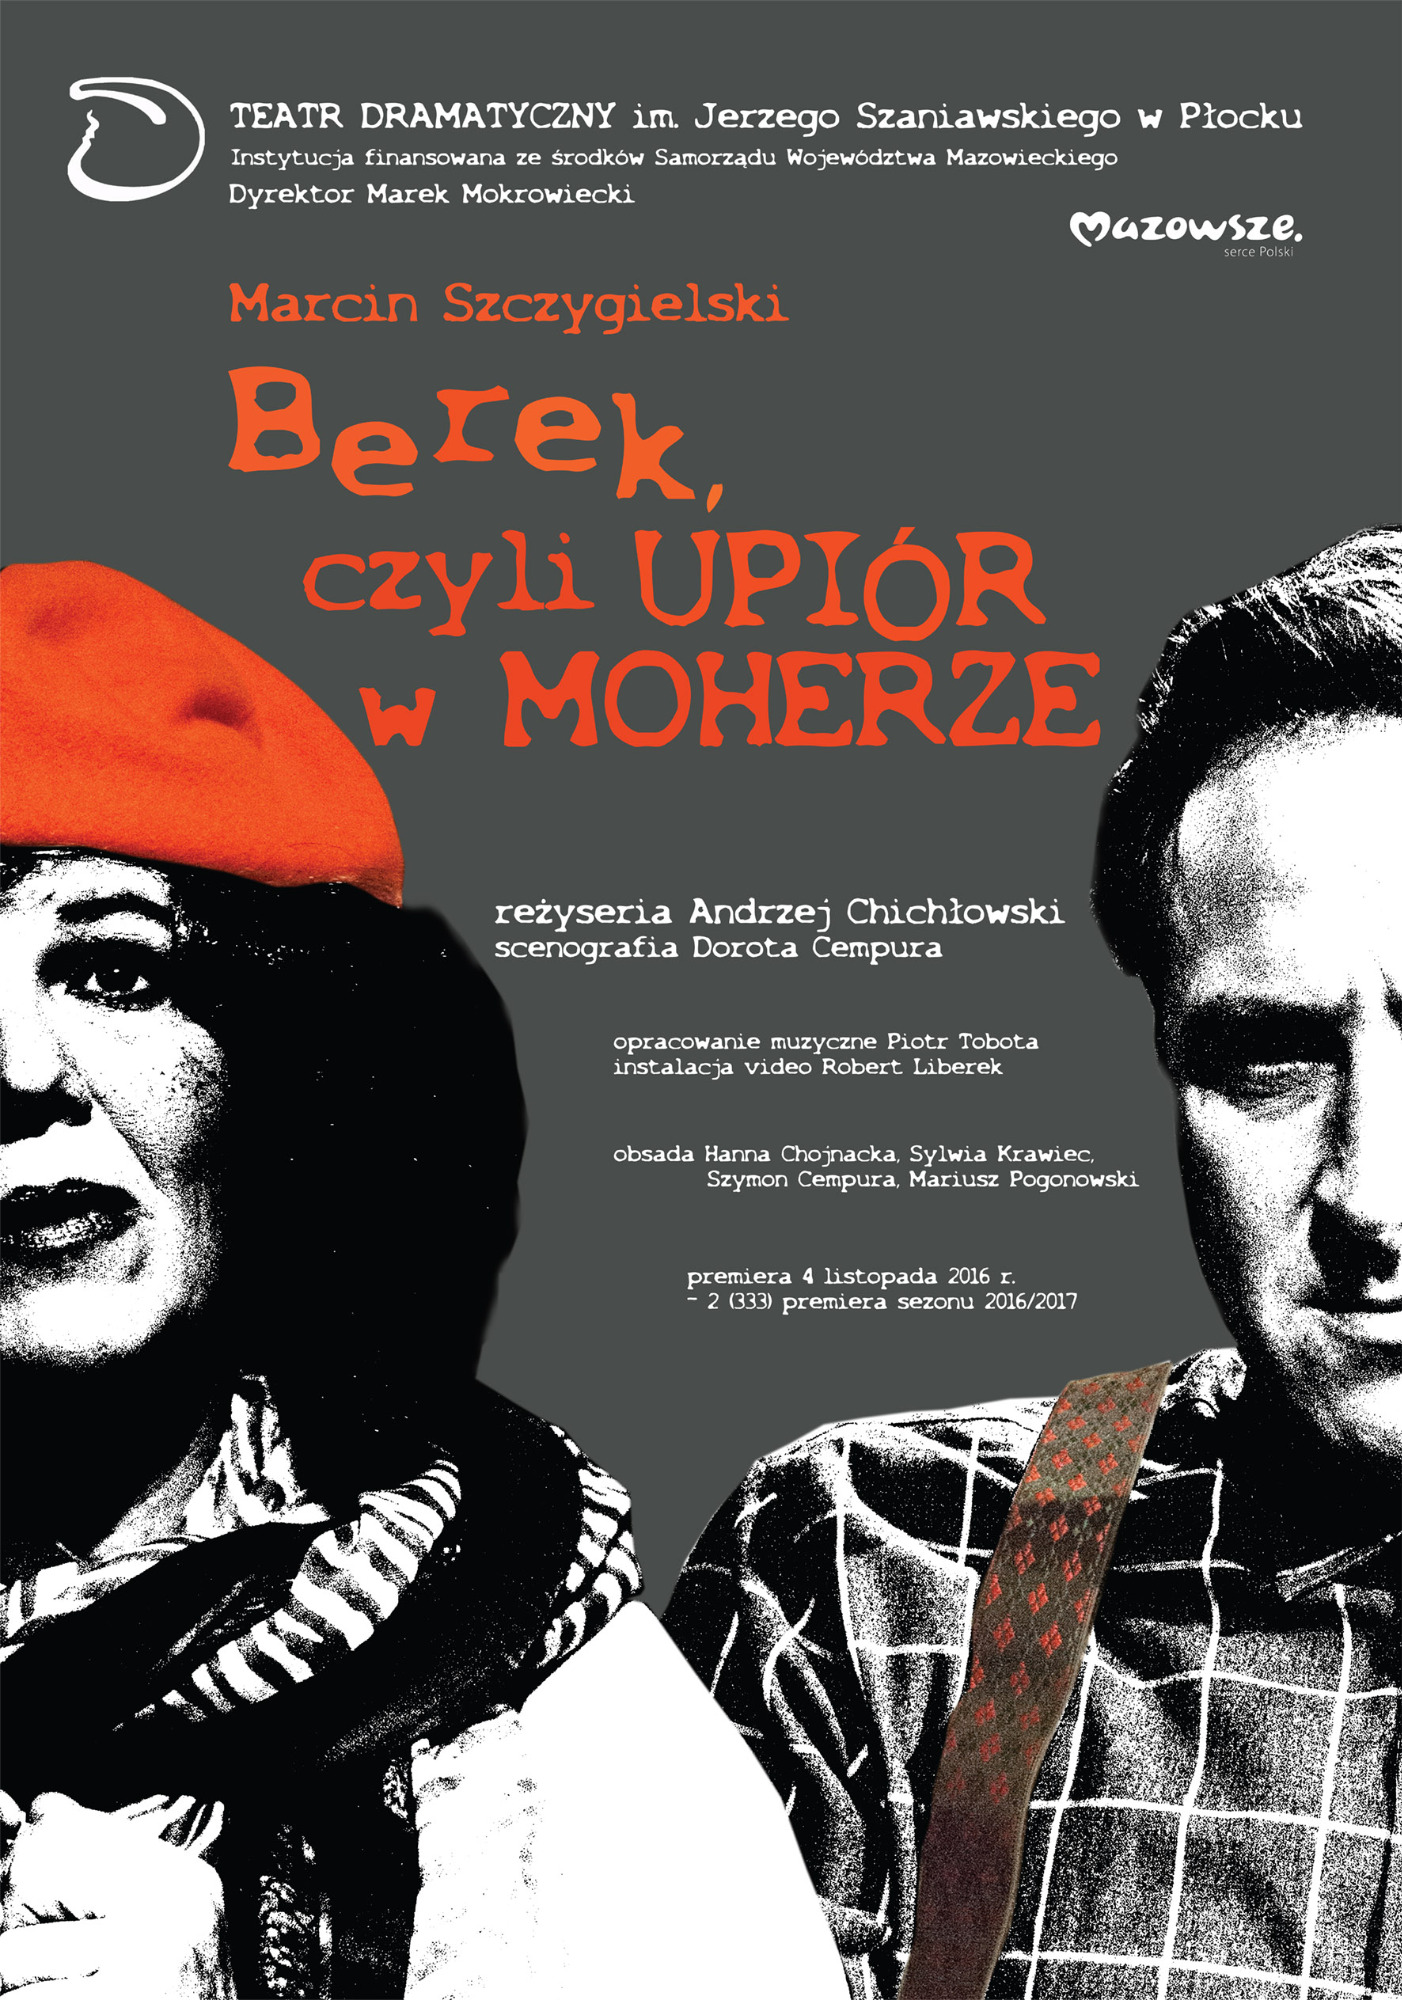 Plakat - Berek, czyli upiór w moherze